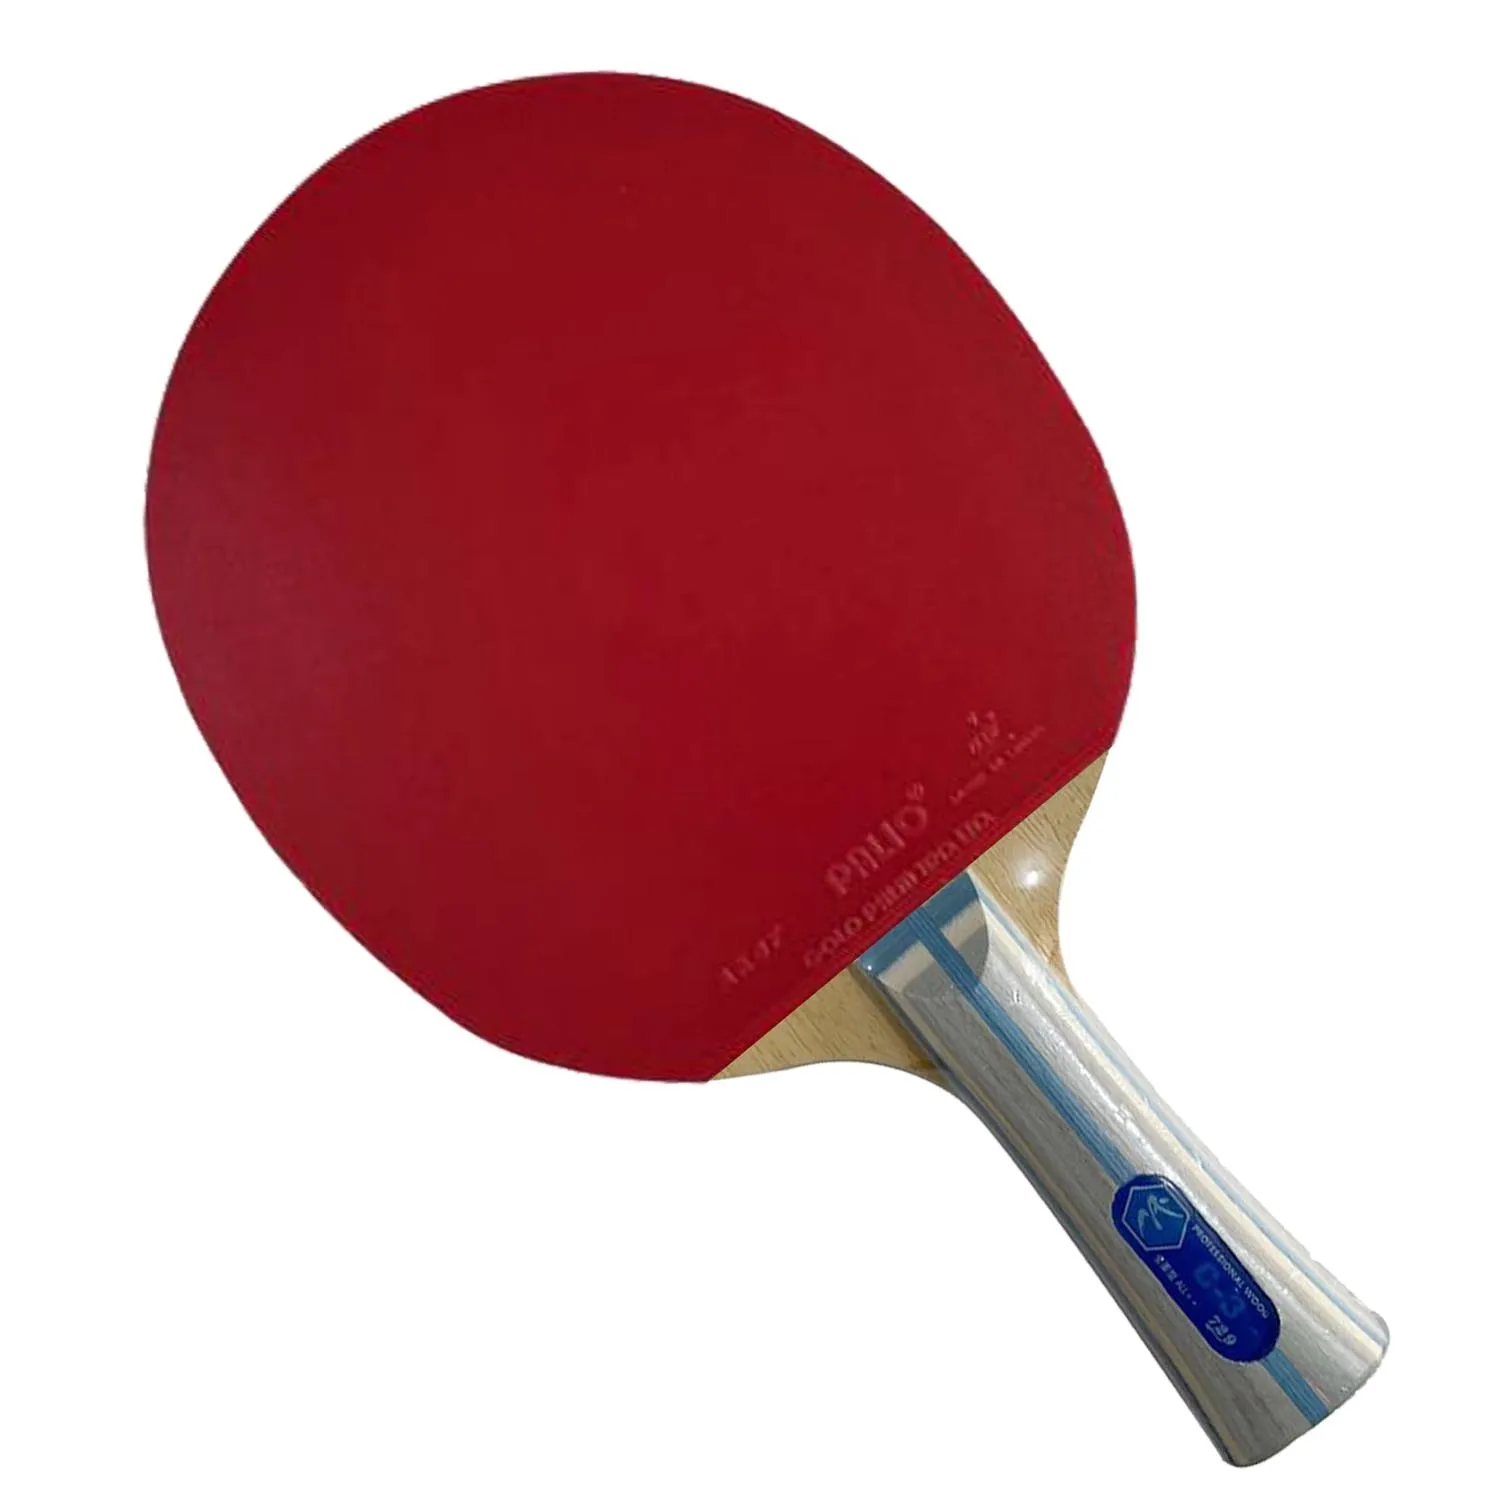 Профессиональная Комбинированная Ракетка для настольного тенниса Ping Pong Paddle ALL ++ RITC 729 Friendship C-3 Blade с 2-мя СИНИМИ матовыми каучуками Palio AK47